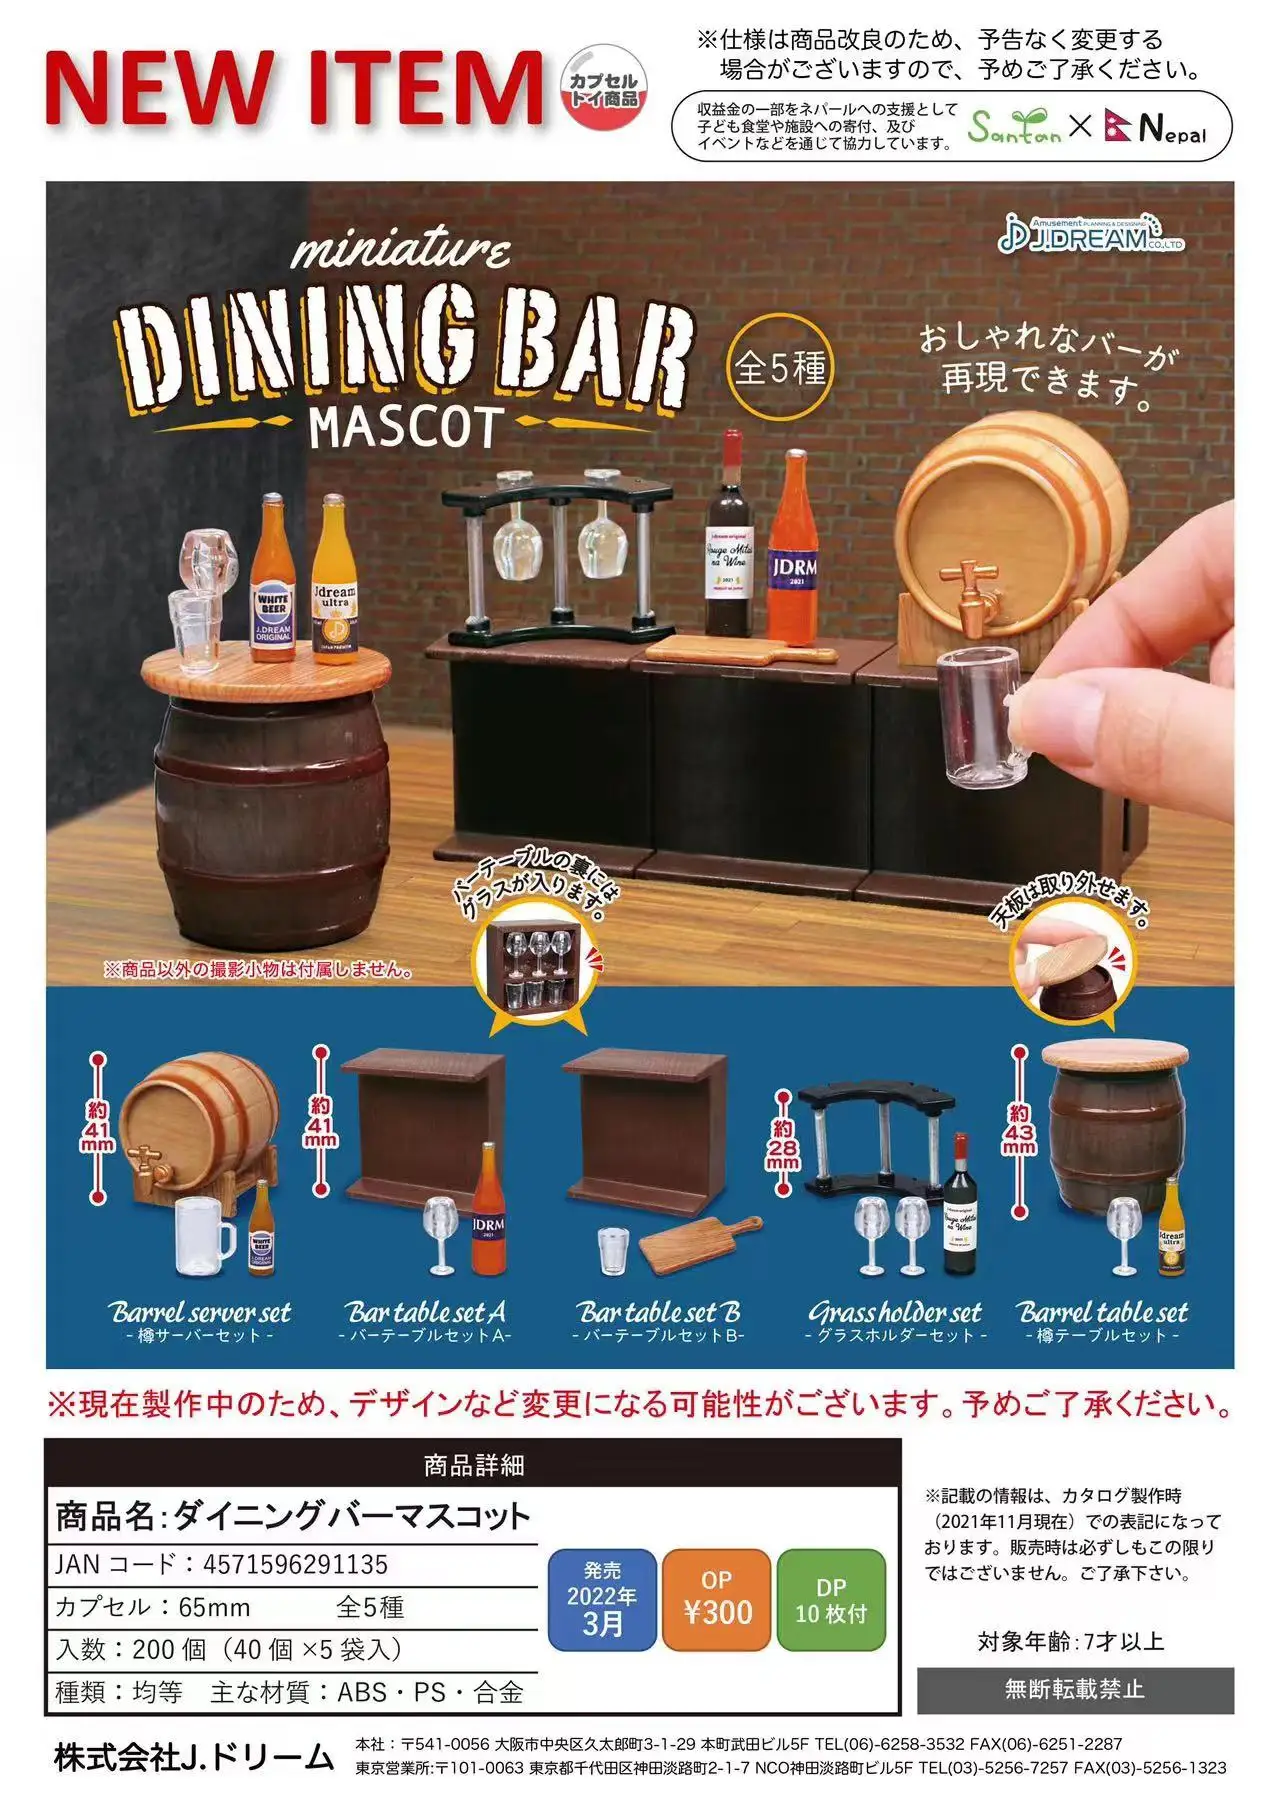 

J.Dream capsule toys dining bar mascot dollhouse miniatures match 1/12 bjd blythe ob11 sylvania aqua shooter figma gsc figures